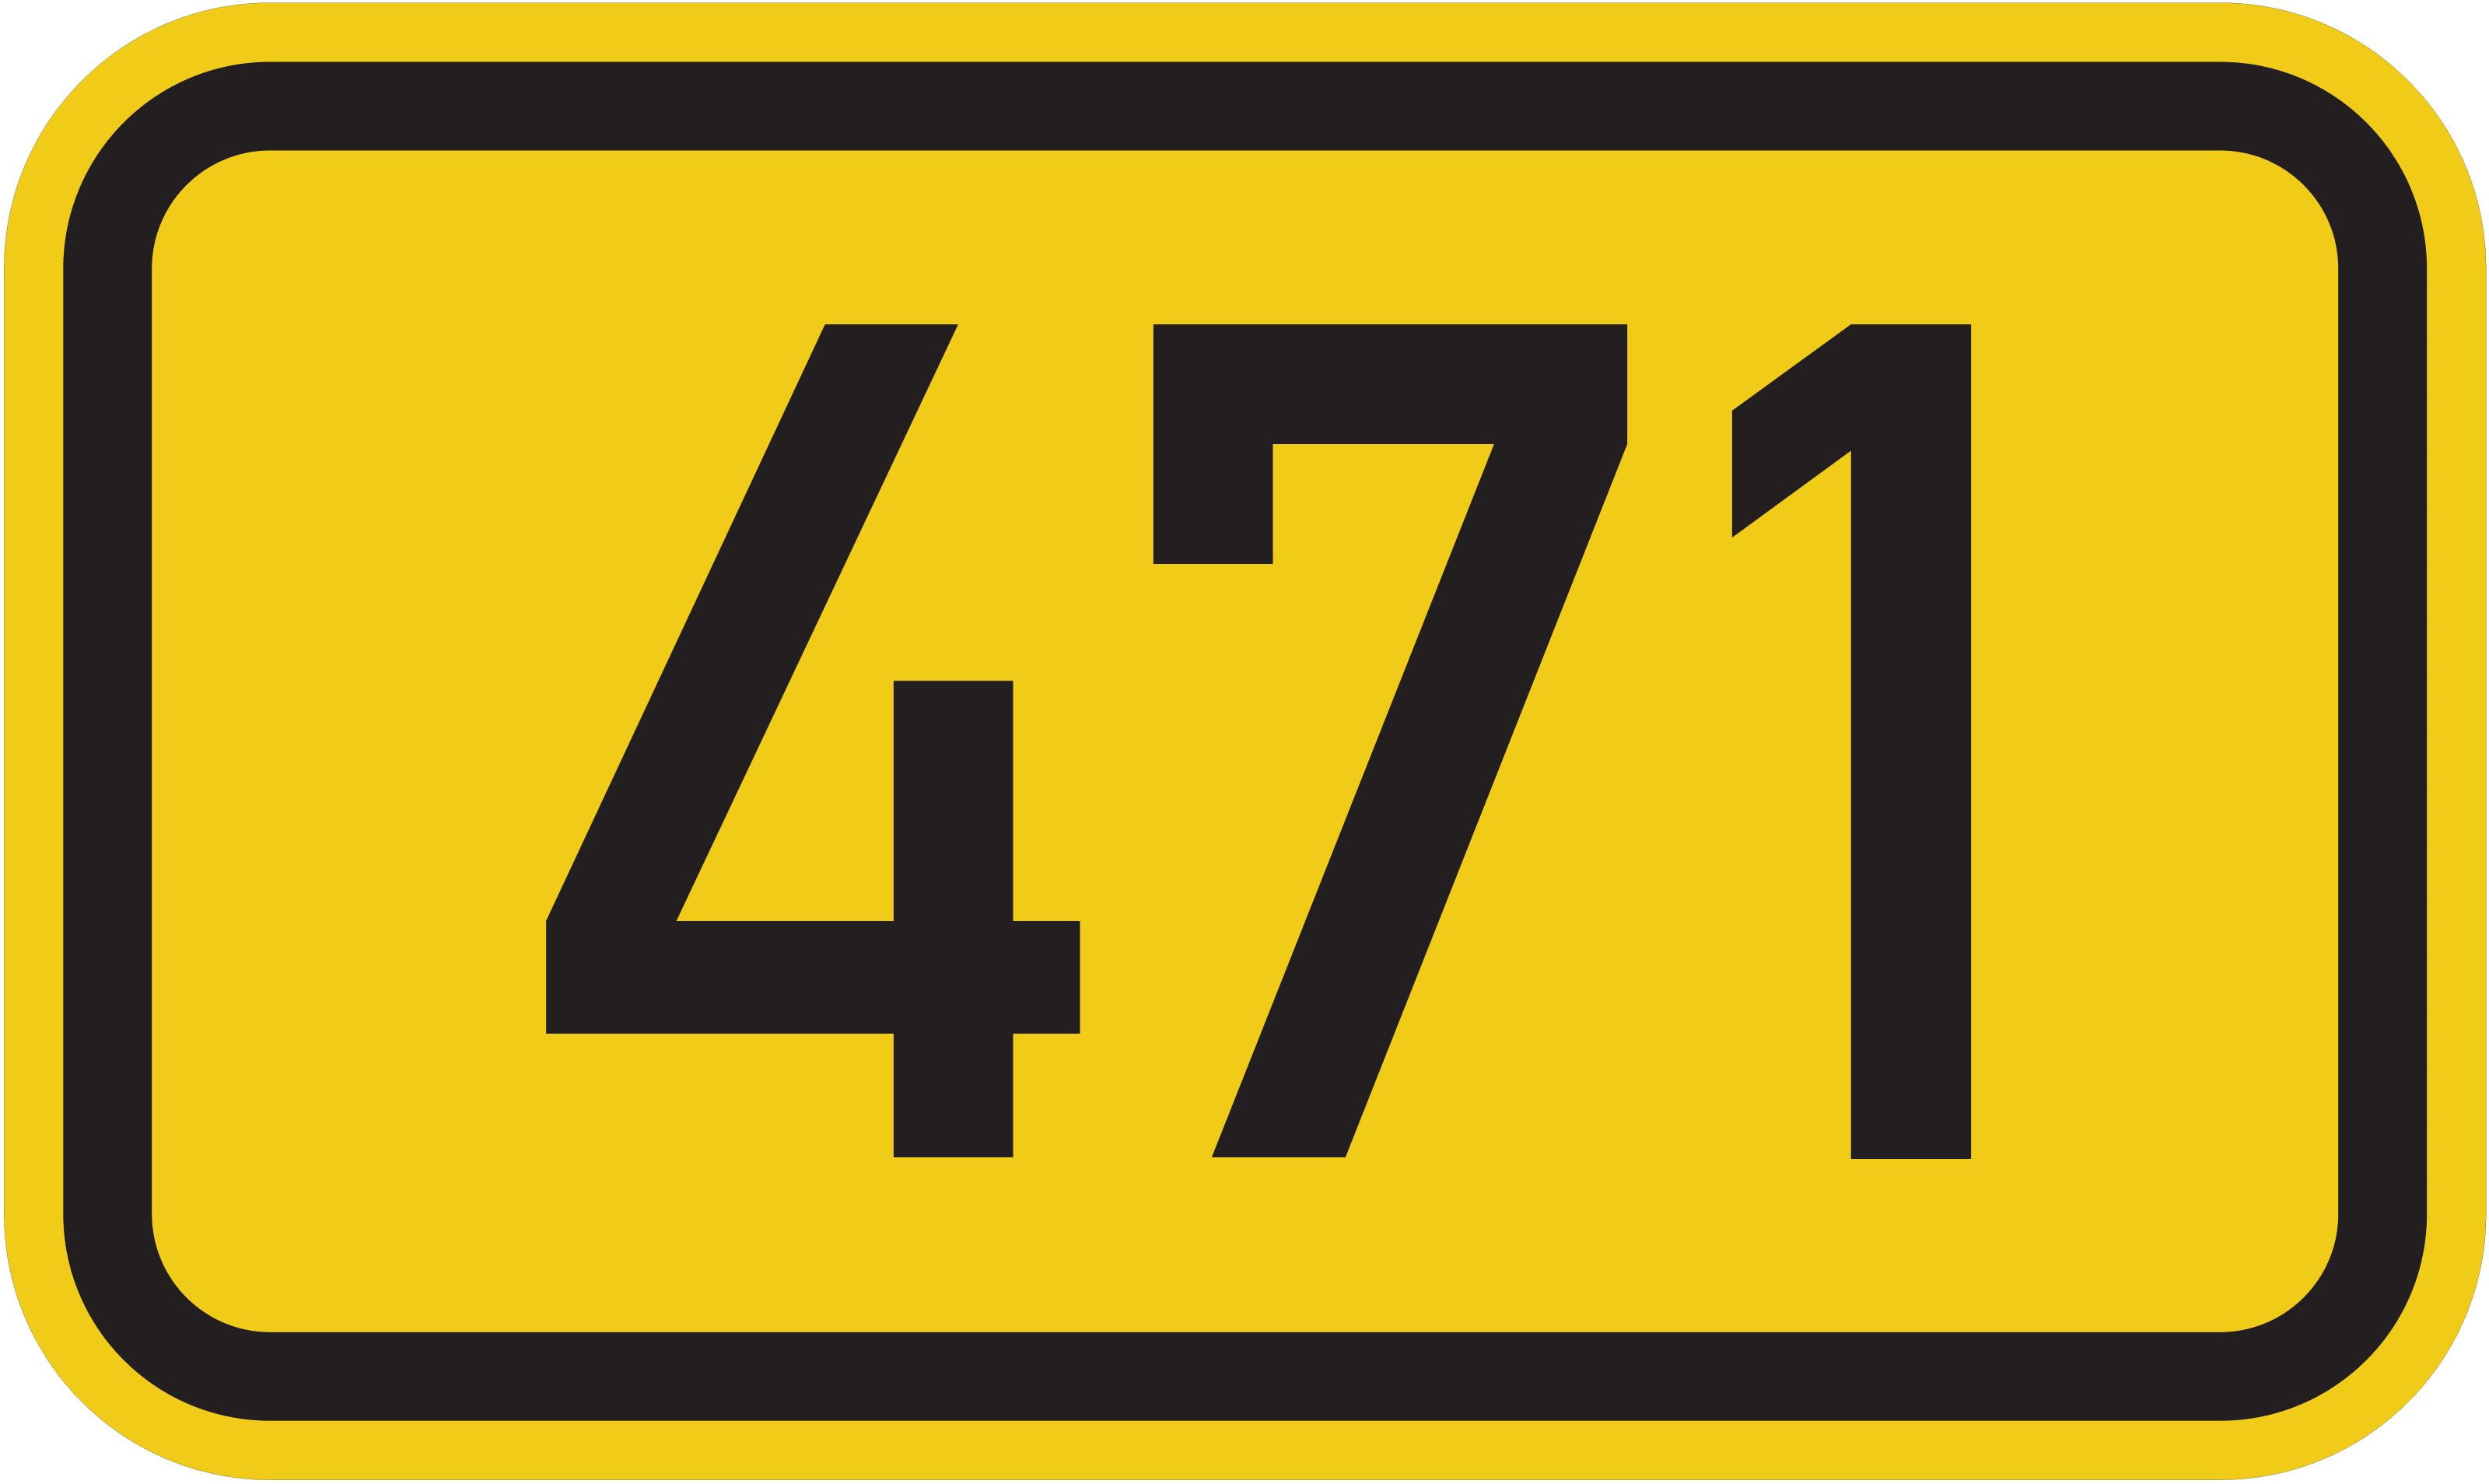 Bundesstraße B 471